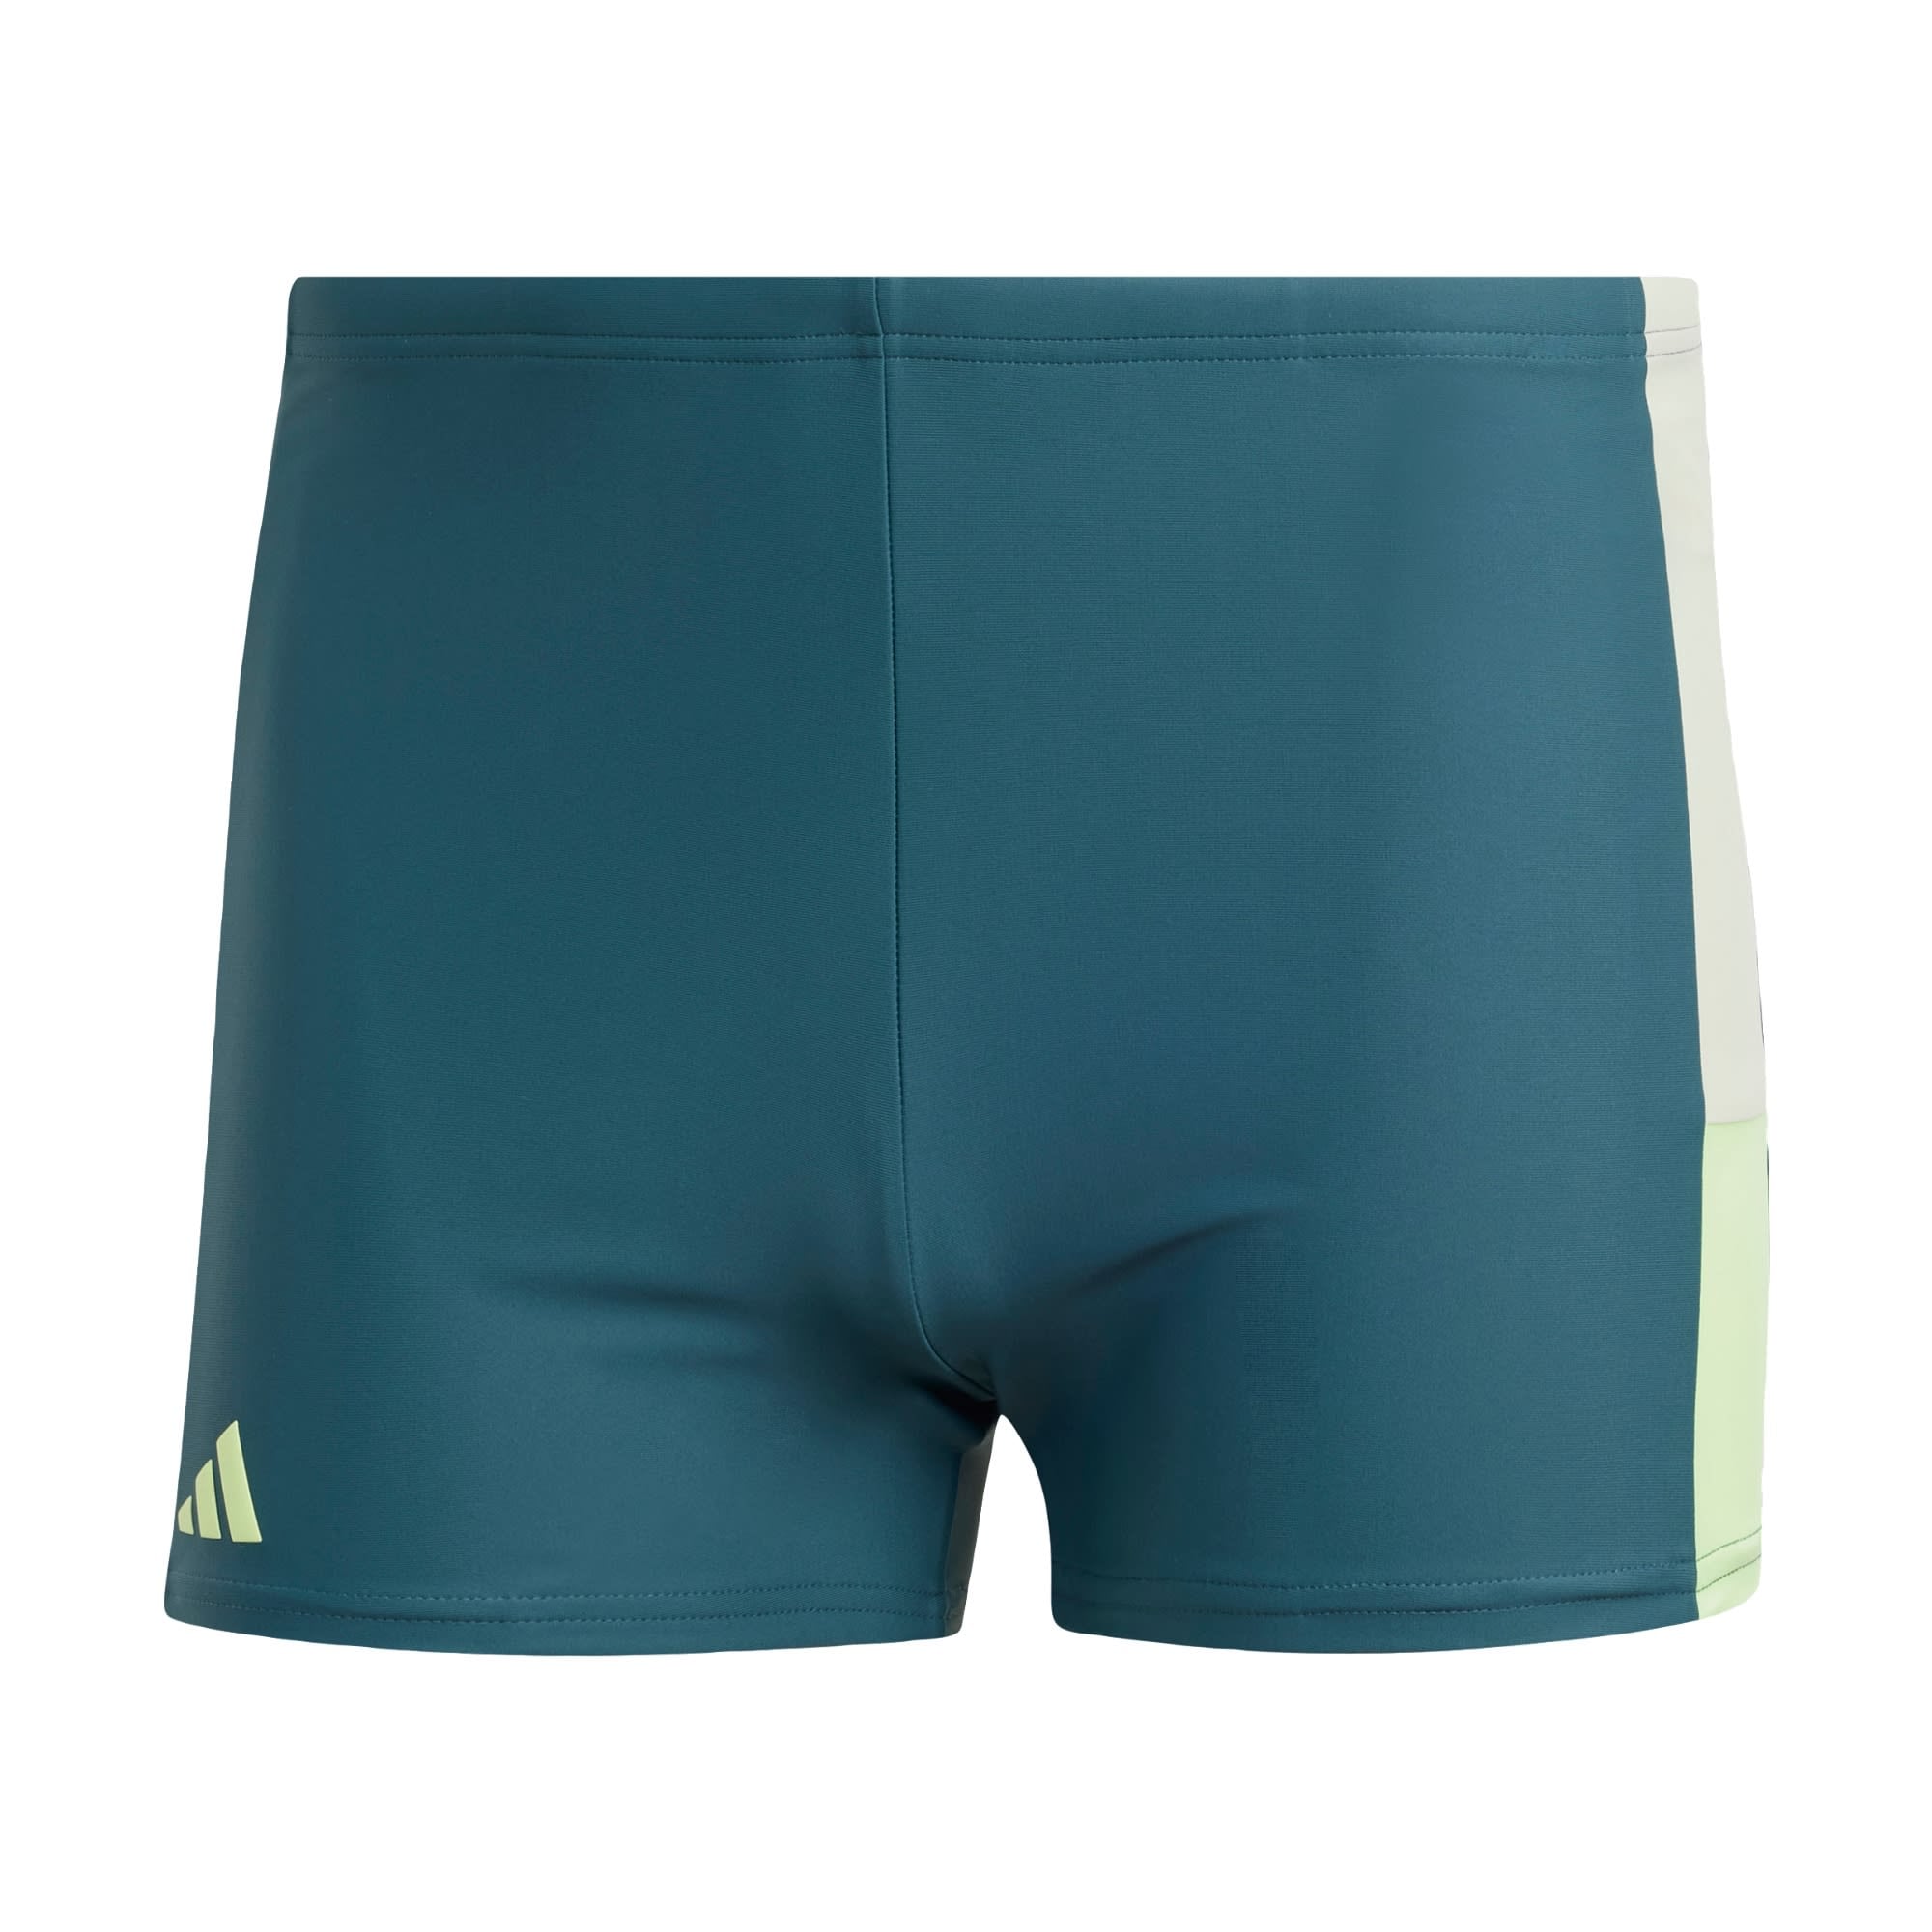 ADIDAS PERFORMANCE Športne kopalne hlače  cijansko modra / pastelno zelena / bela